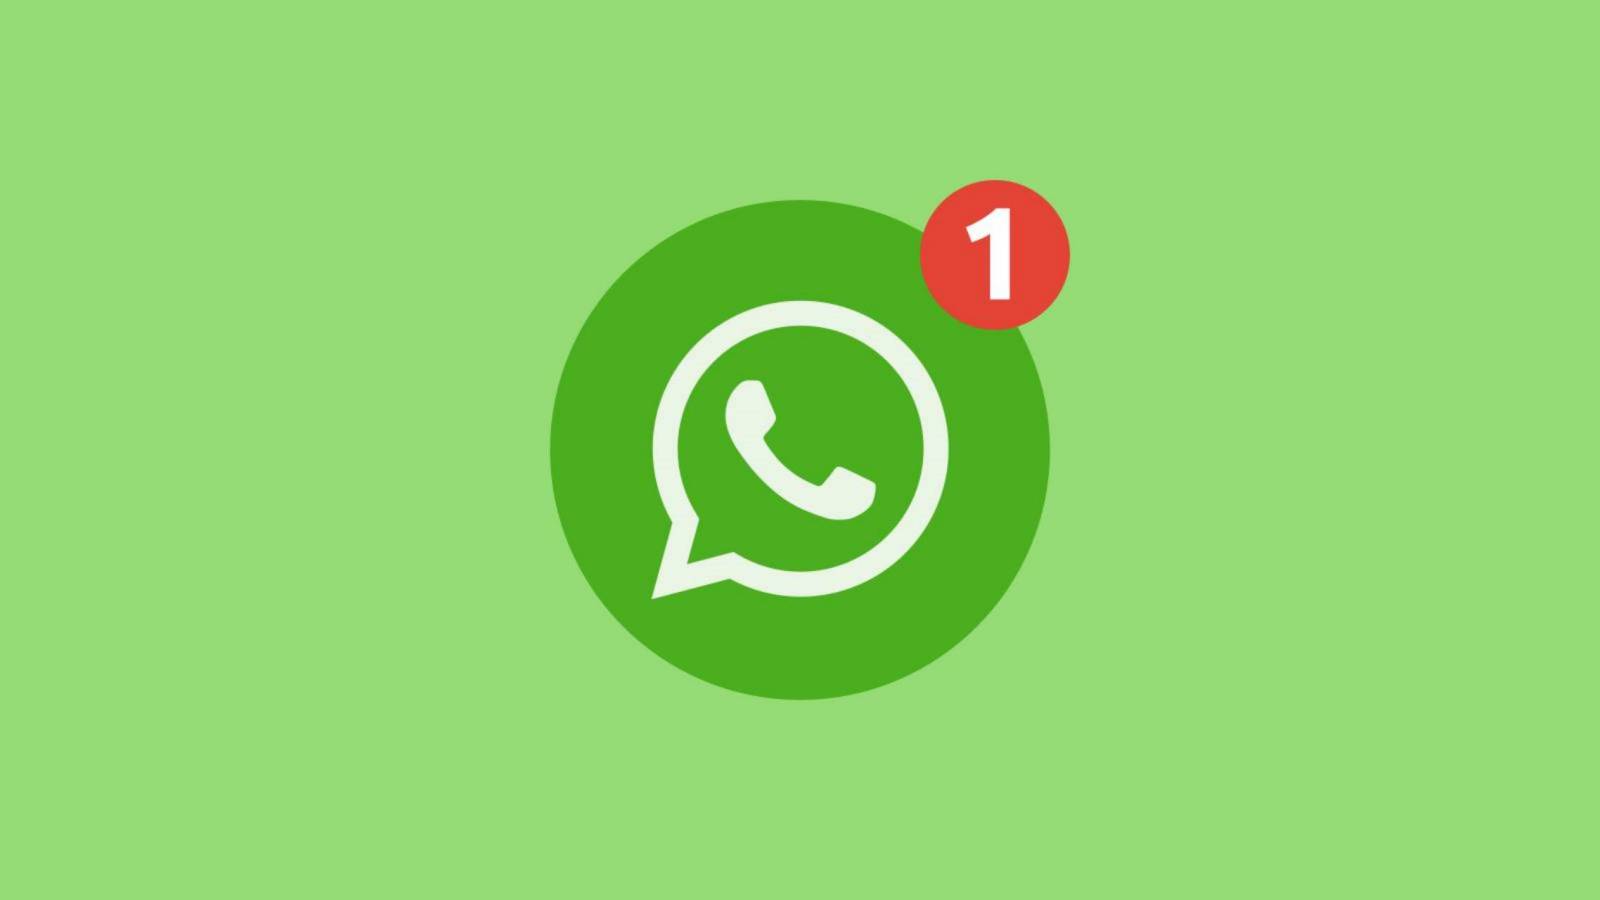 WhatsApp alaturare